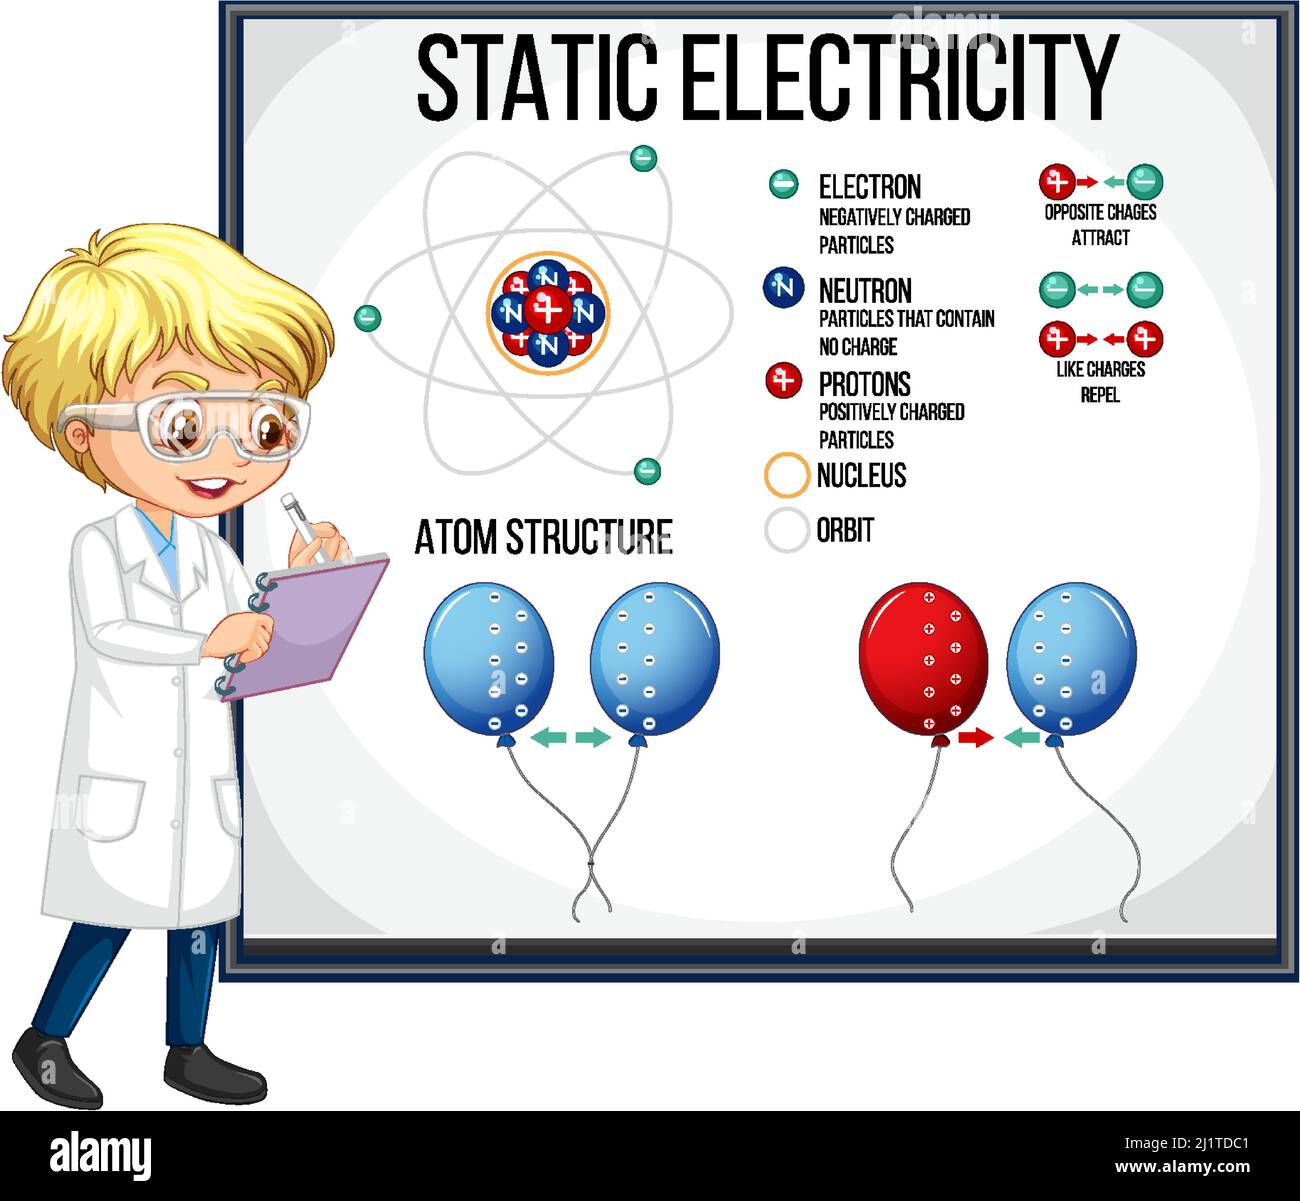 Wissenschaftler Junge erklärt Atom-Struktur der statischen Elektrizität Illustration Stock Vektor